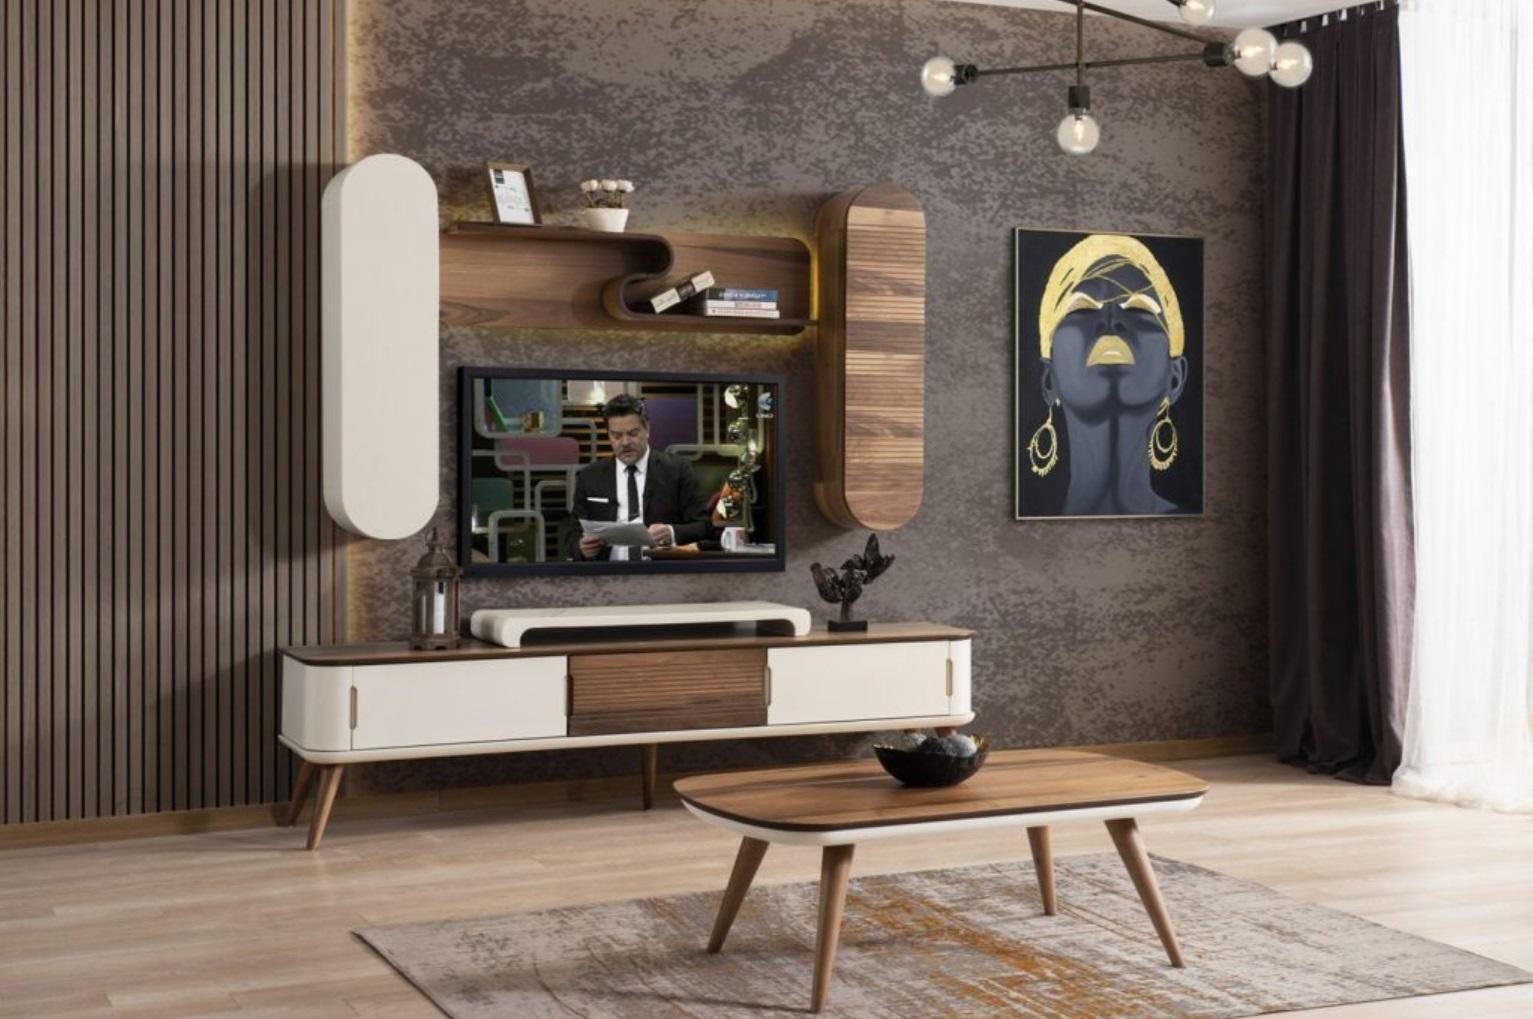 Beige St., Luxus JVmoebel (1 ständer Lowboard Wohnwände Lowboard Sideboard tv Ständer) TV Holz Wohnwand rtv